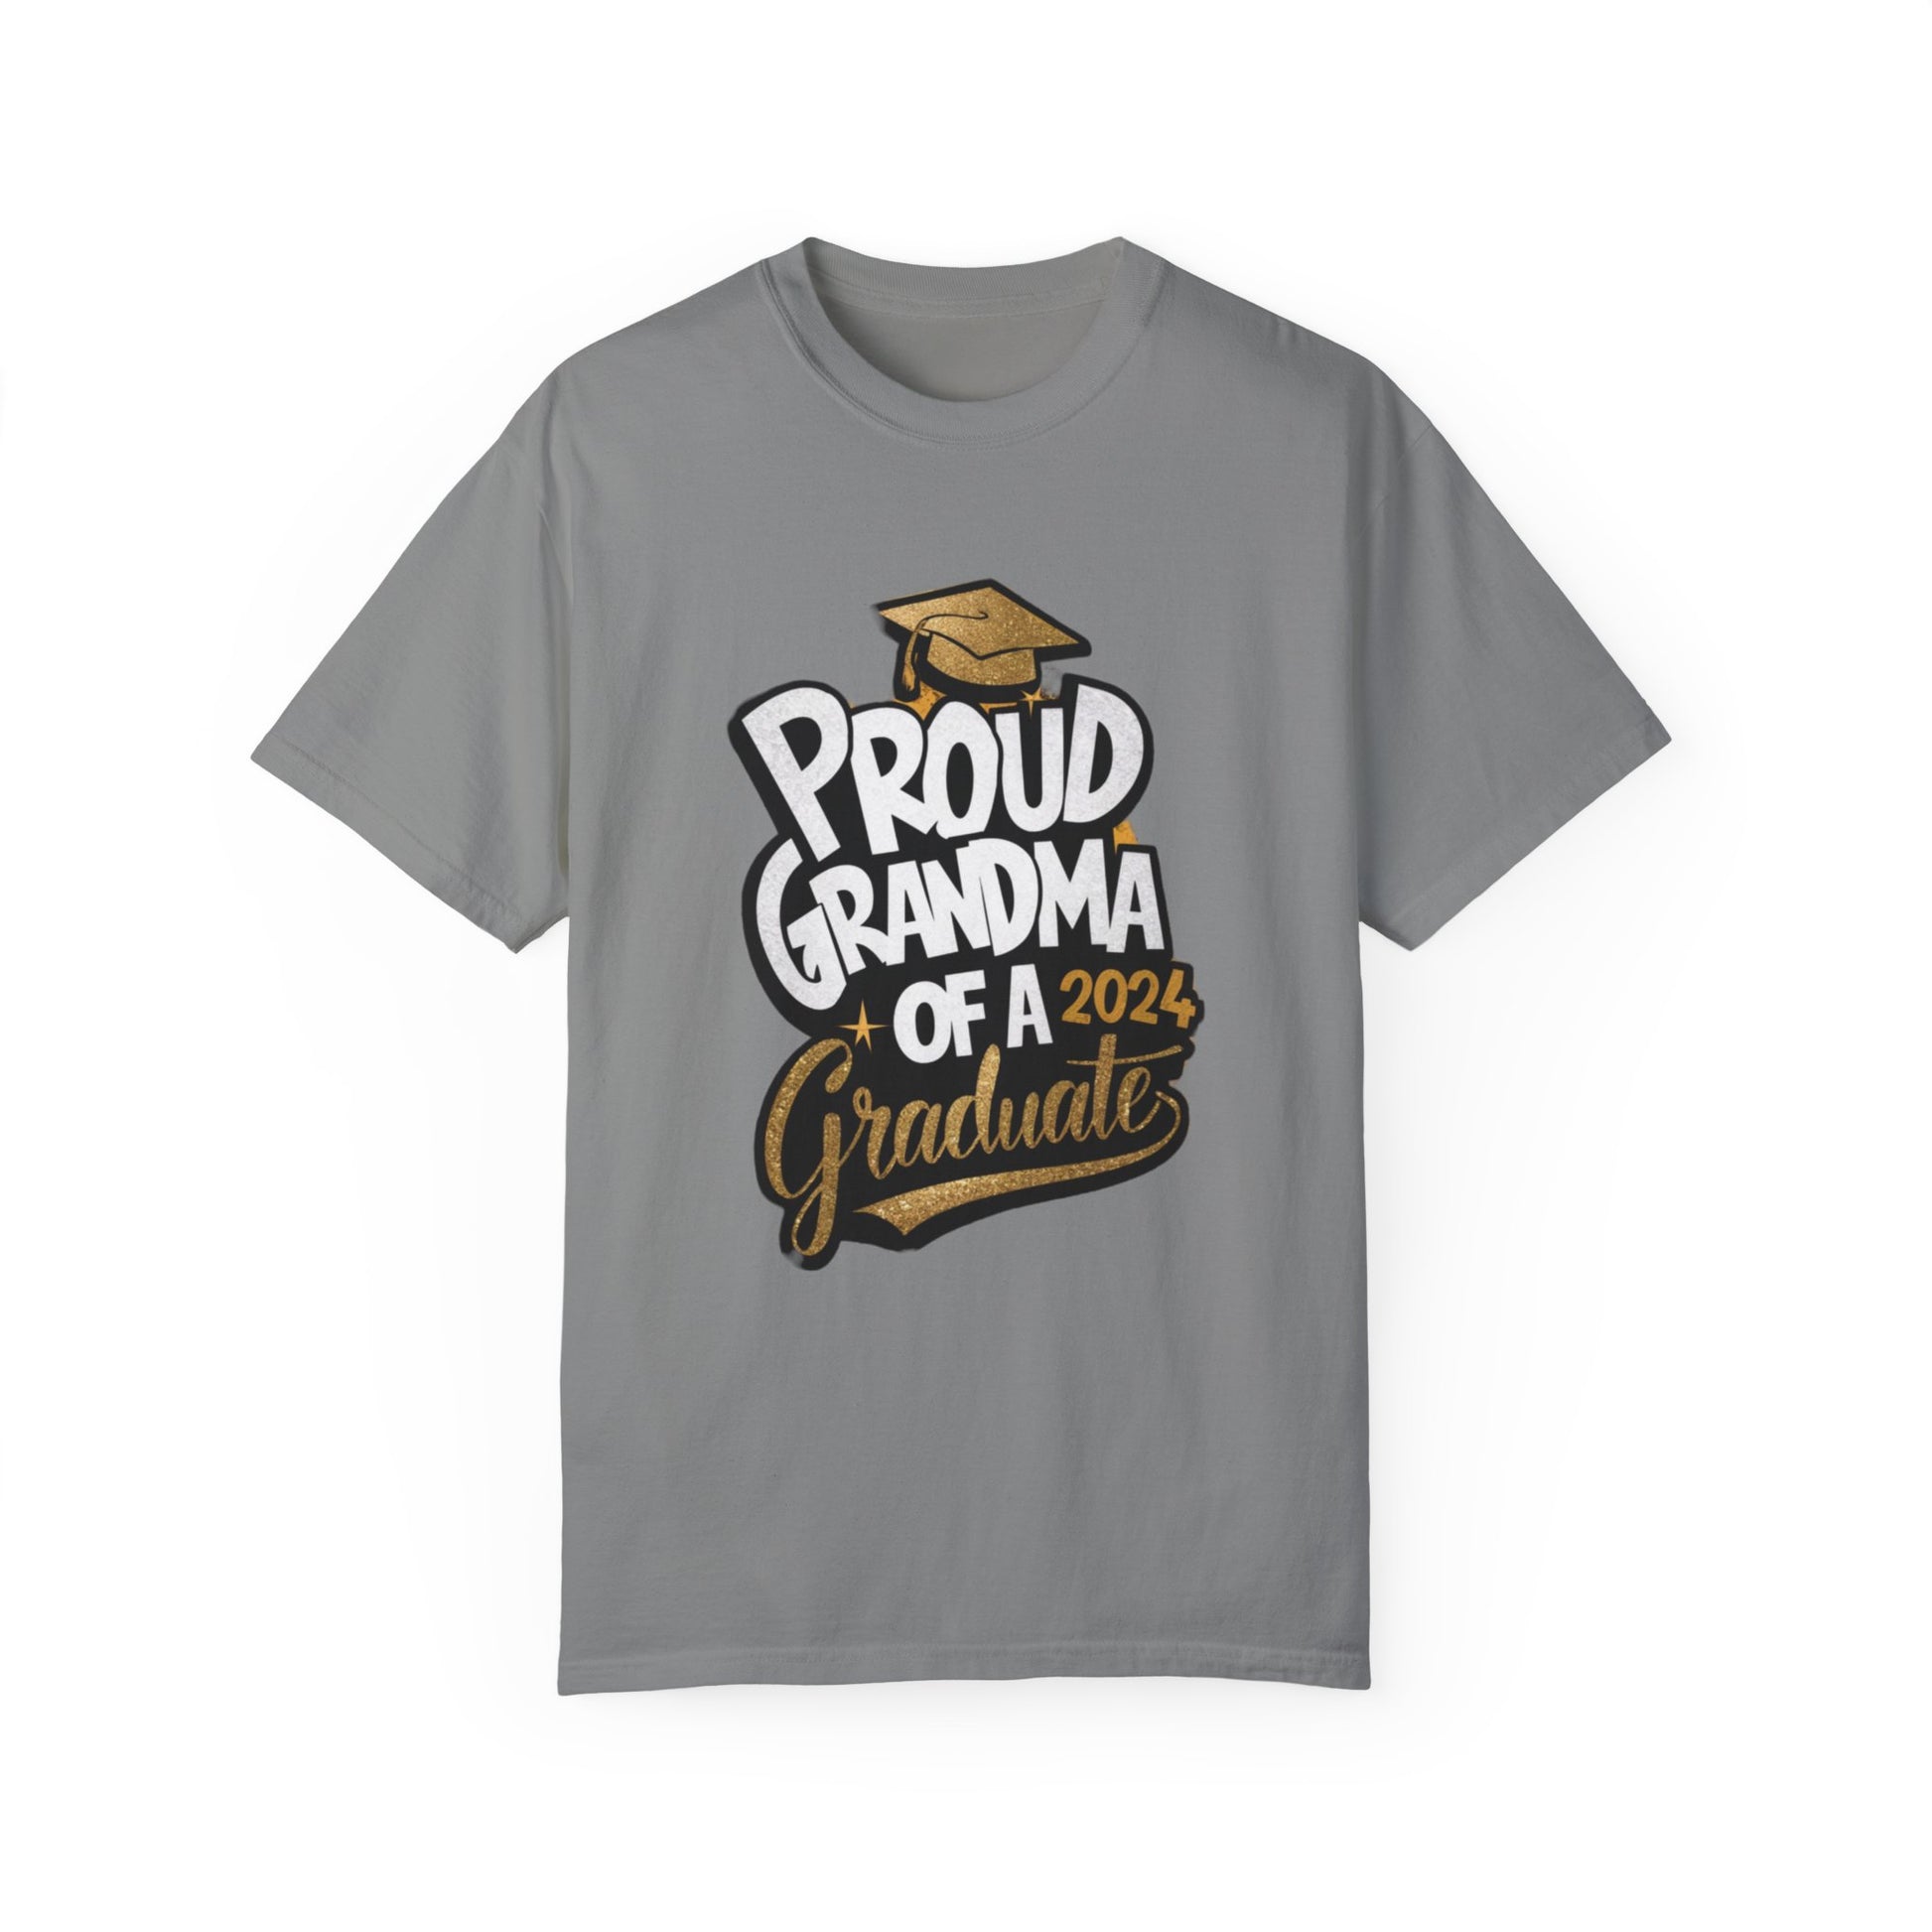 Proud of Grandma 2024 Graduate Unisex Garment-dyed T-shirt Cotton Funny Humorous Graphic Soft Premium Unisex Men Women Granite T-shirt Birthday Gift-4